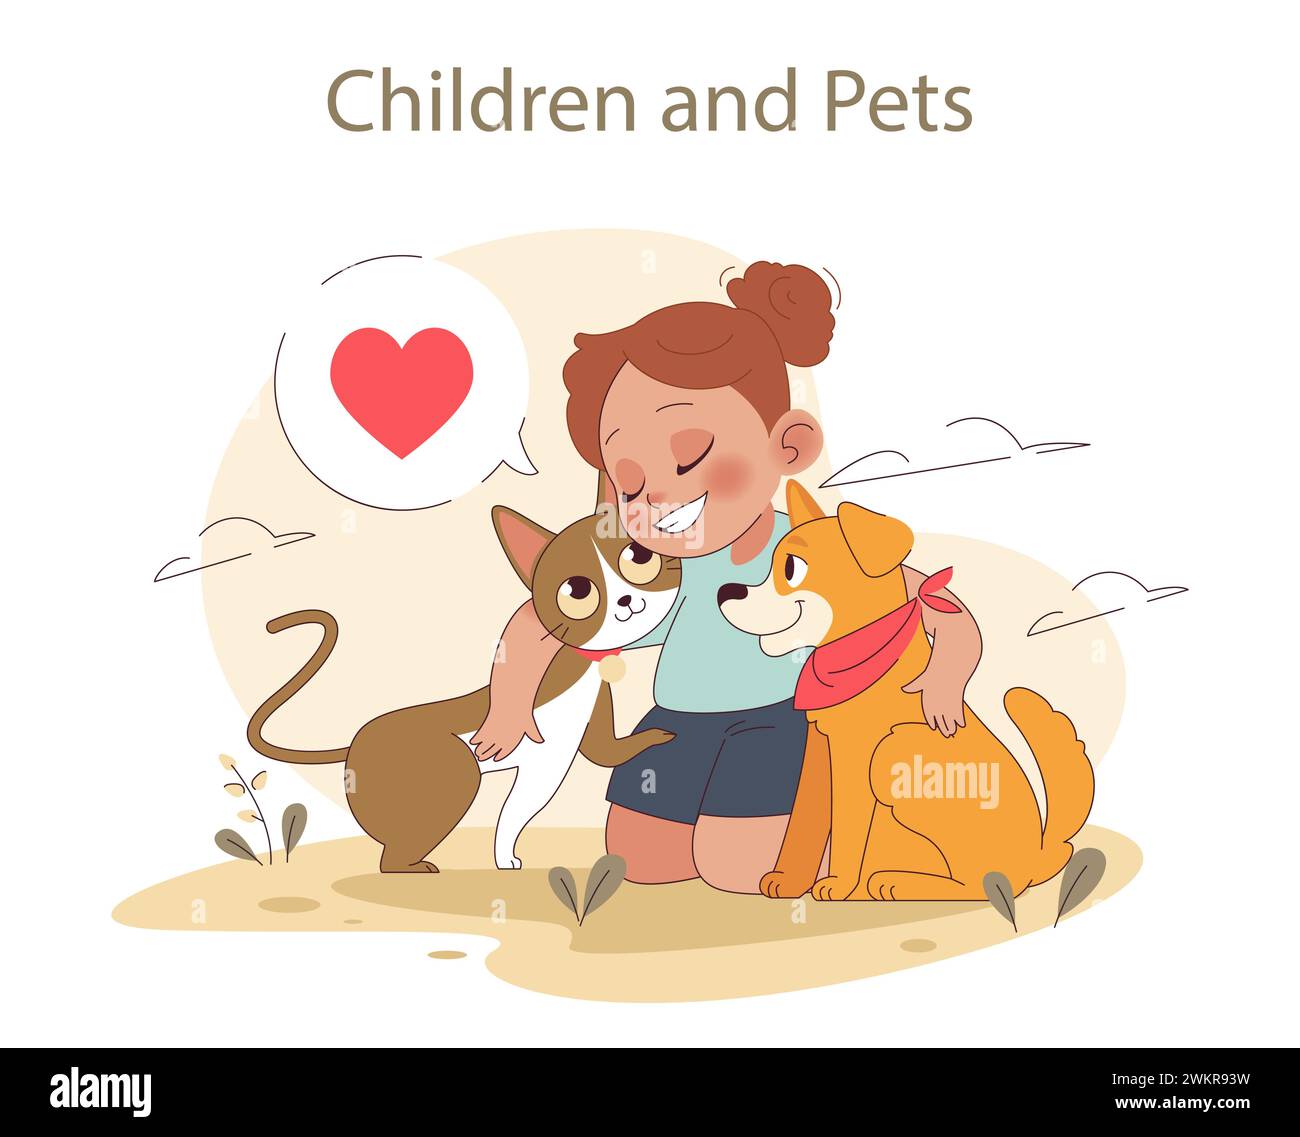 Kinder und Haustiere. Fröhliche Wechselwirkungen mit Haustieren. Liebe und Freundschaft zwischen einem Mädchen, ihrer Katze und ihrem Hund. Emotionale Bindung, Sorgfalt und Gesellschaft. Illustration des flachen Vektors Stock Vektor